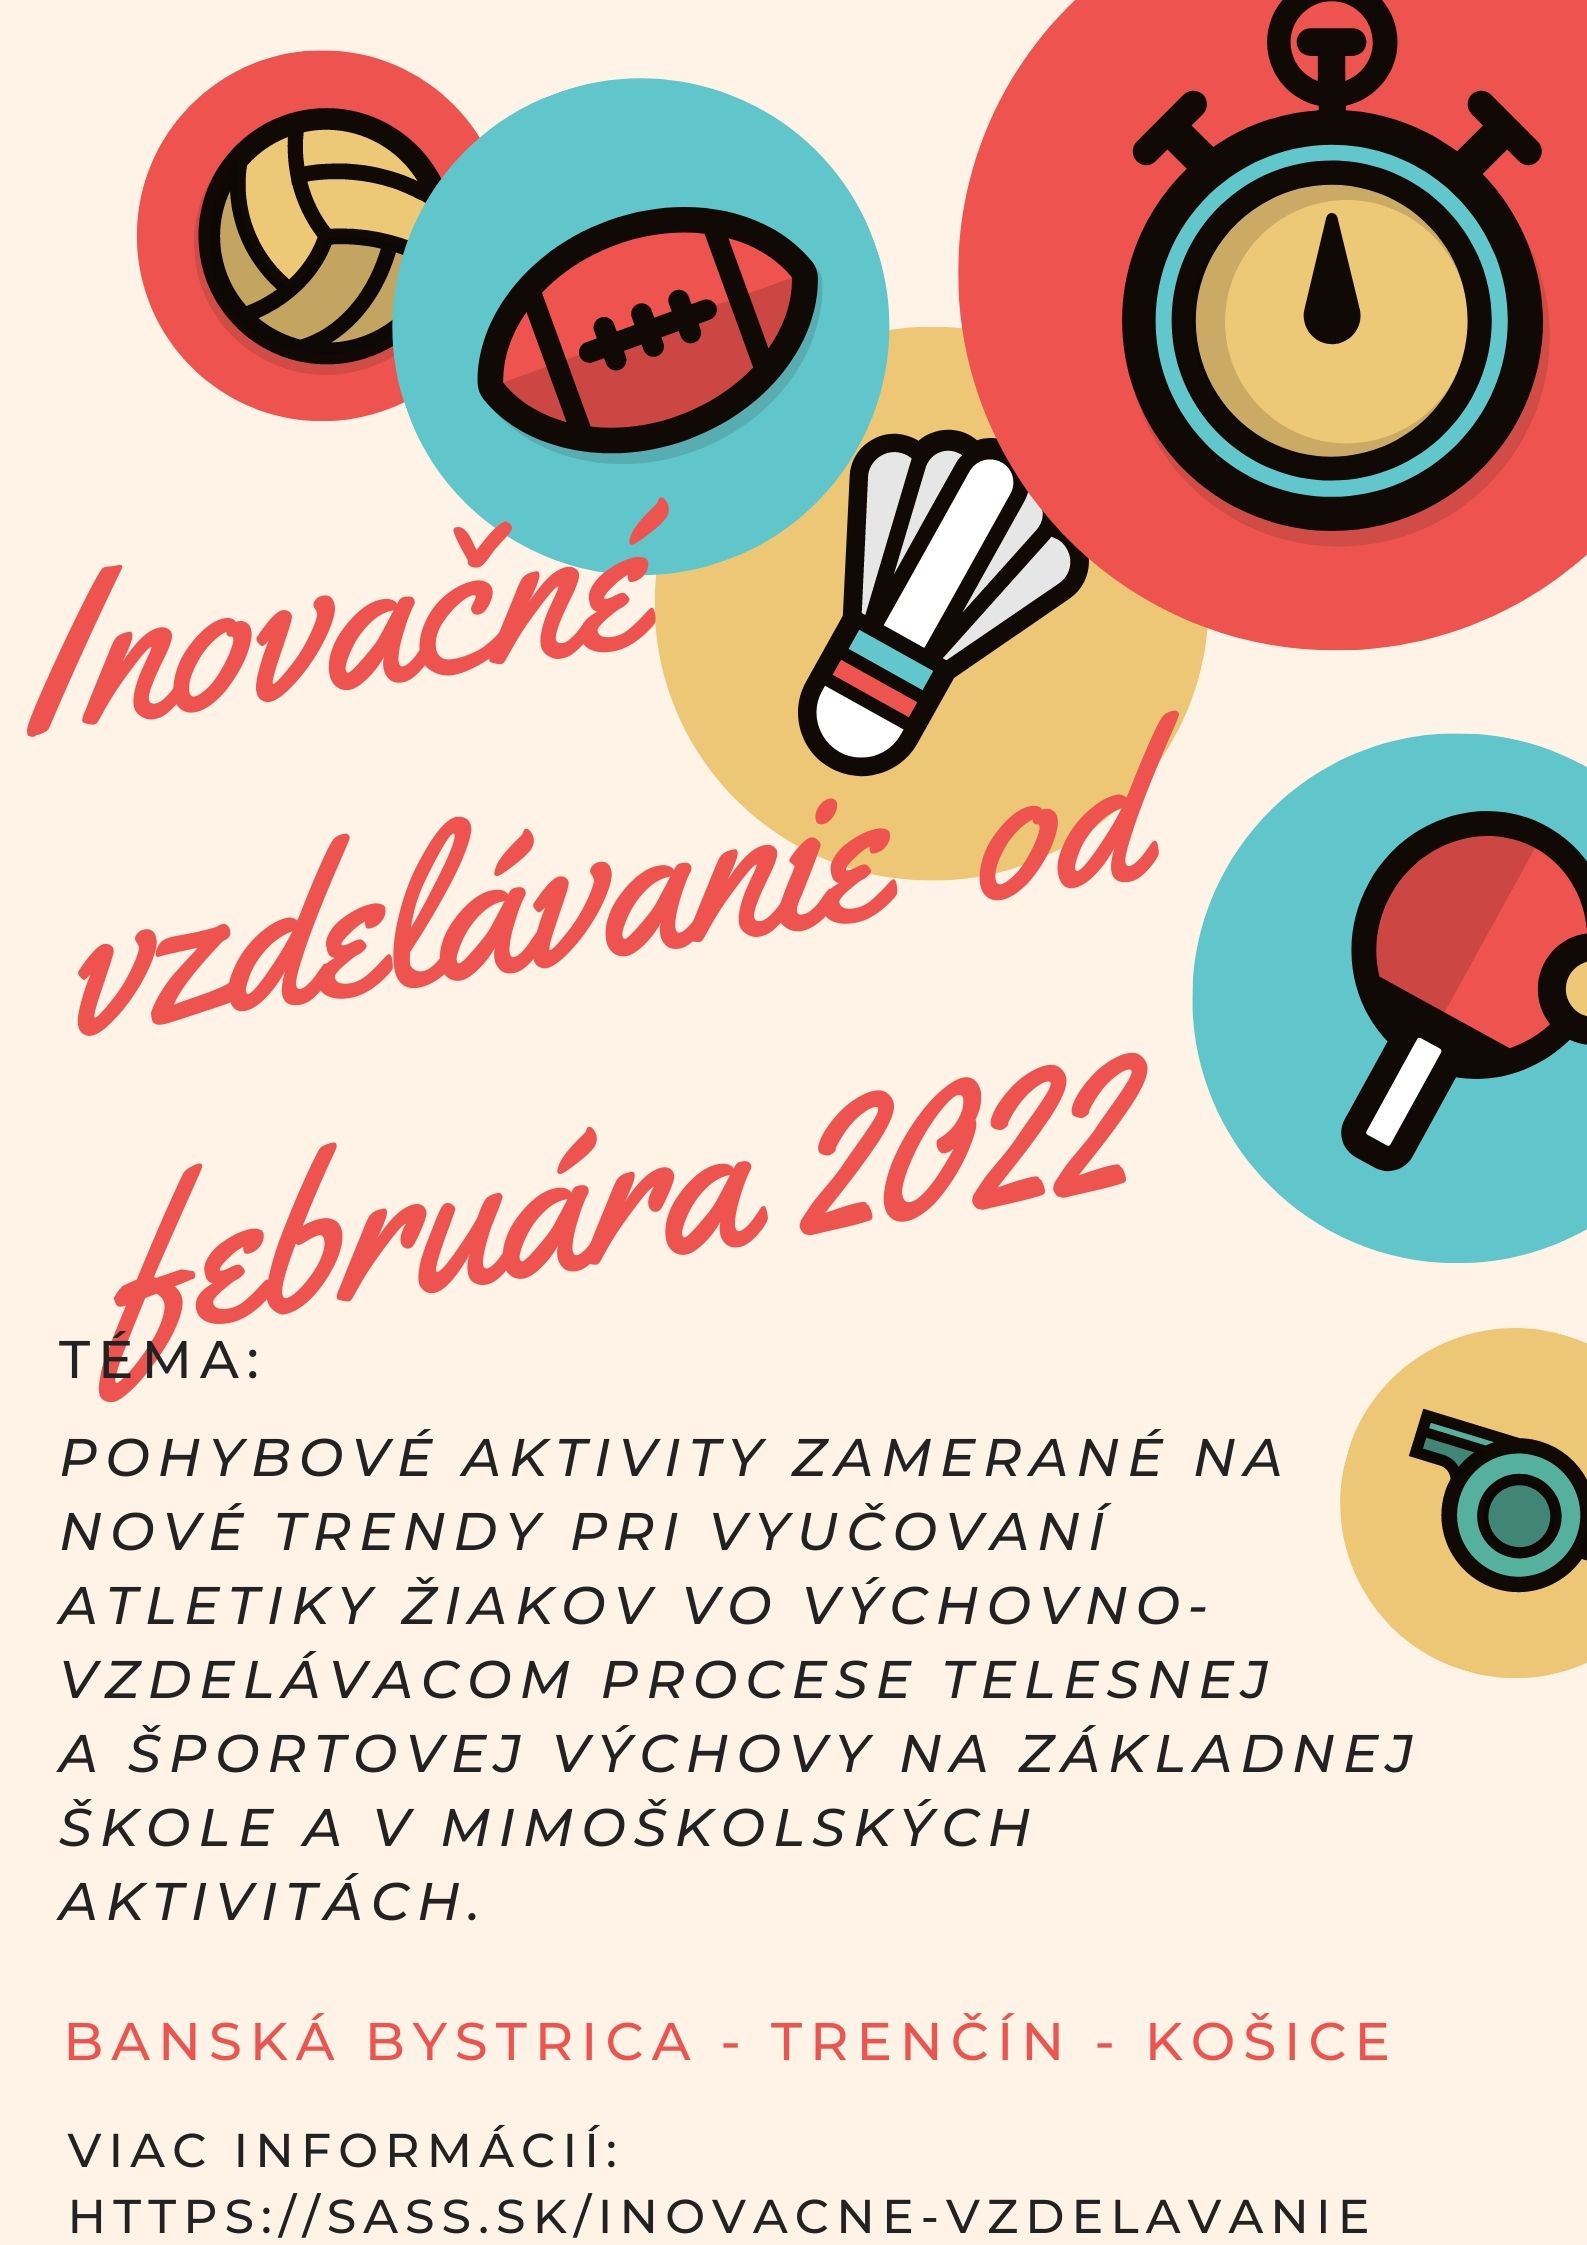 Inovačné vzdelávanie plagatik februar 2022